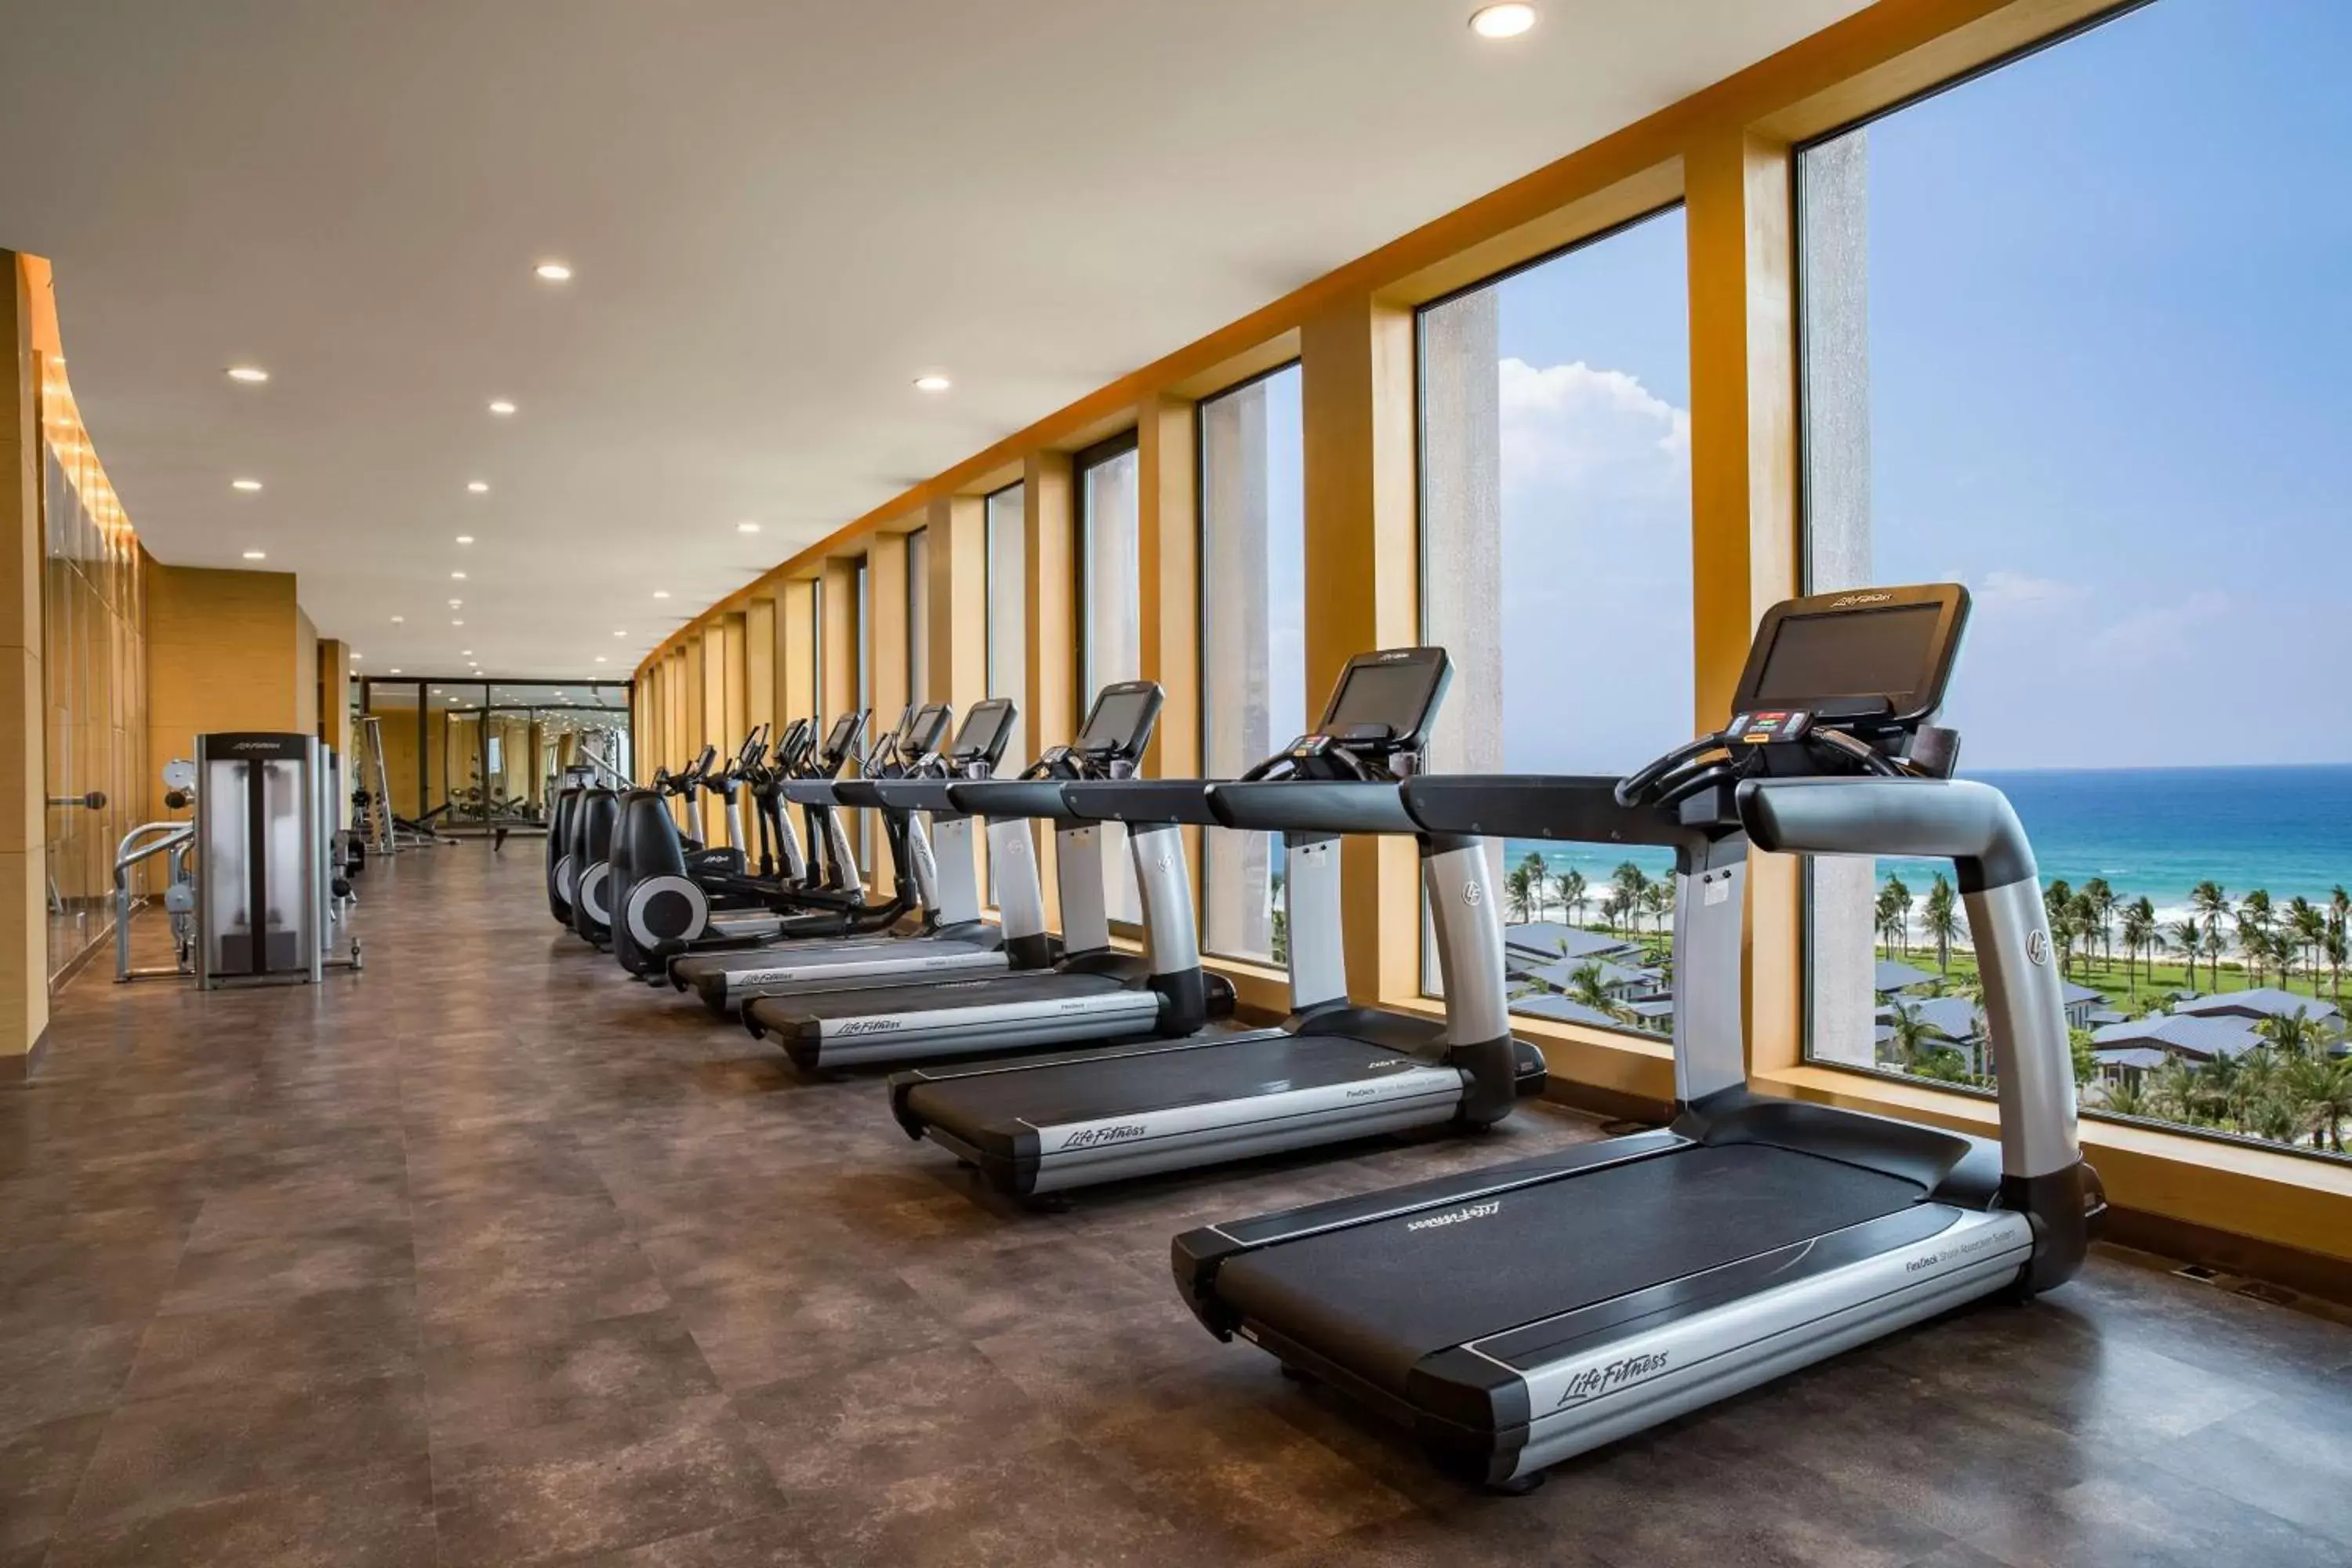 Fitness centre/facilities, Fitness Center/Facilities in Radisson Blu Resort Cam Ranh